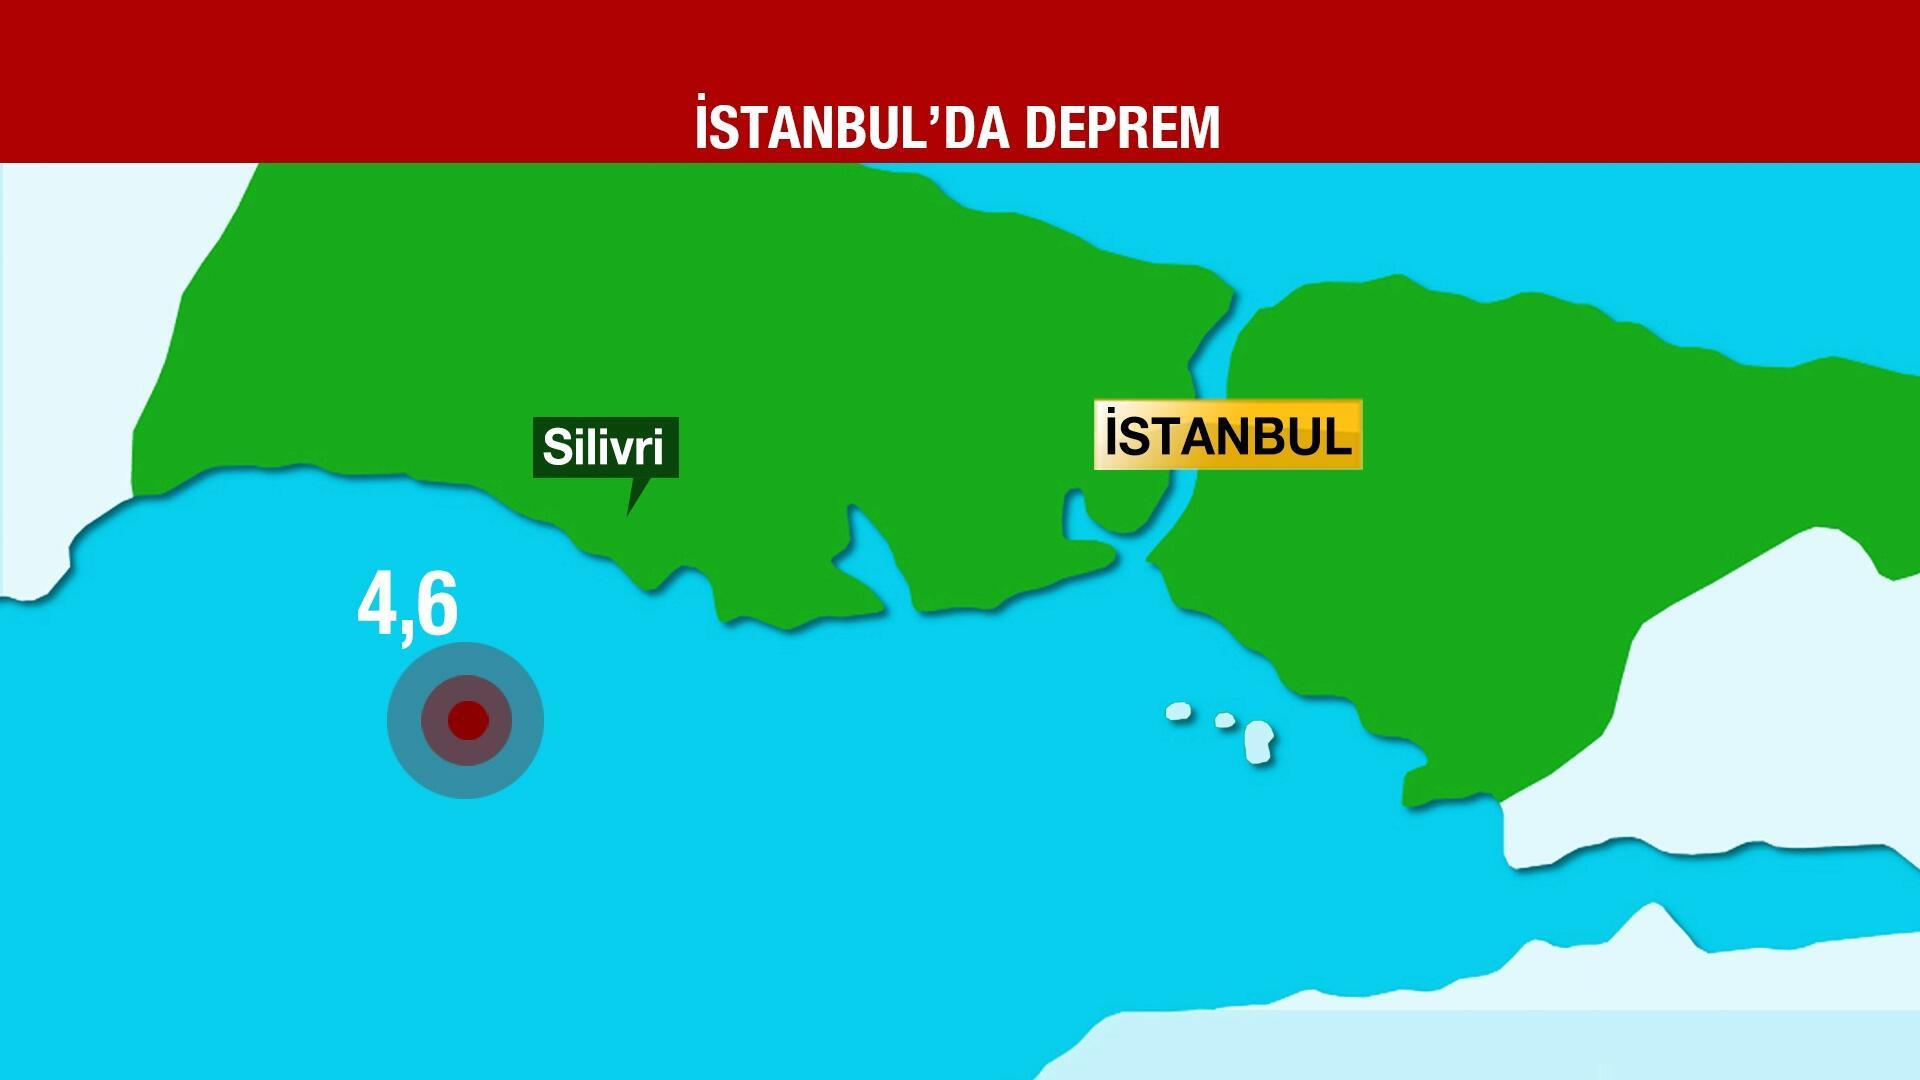 SON DAKİKA... İstanbul'da deprem oldu! İşte depremin şiddeti Son